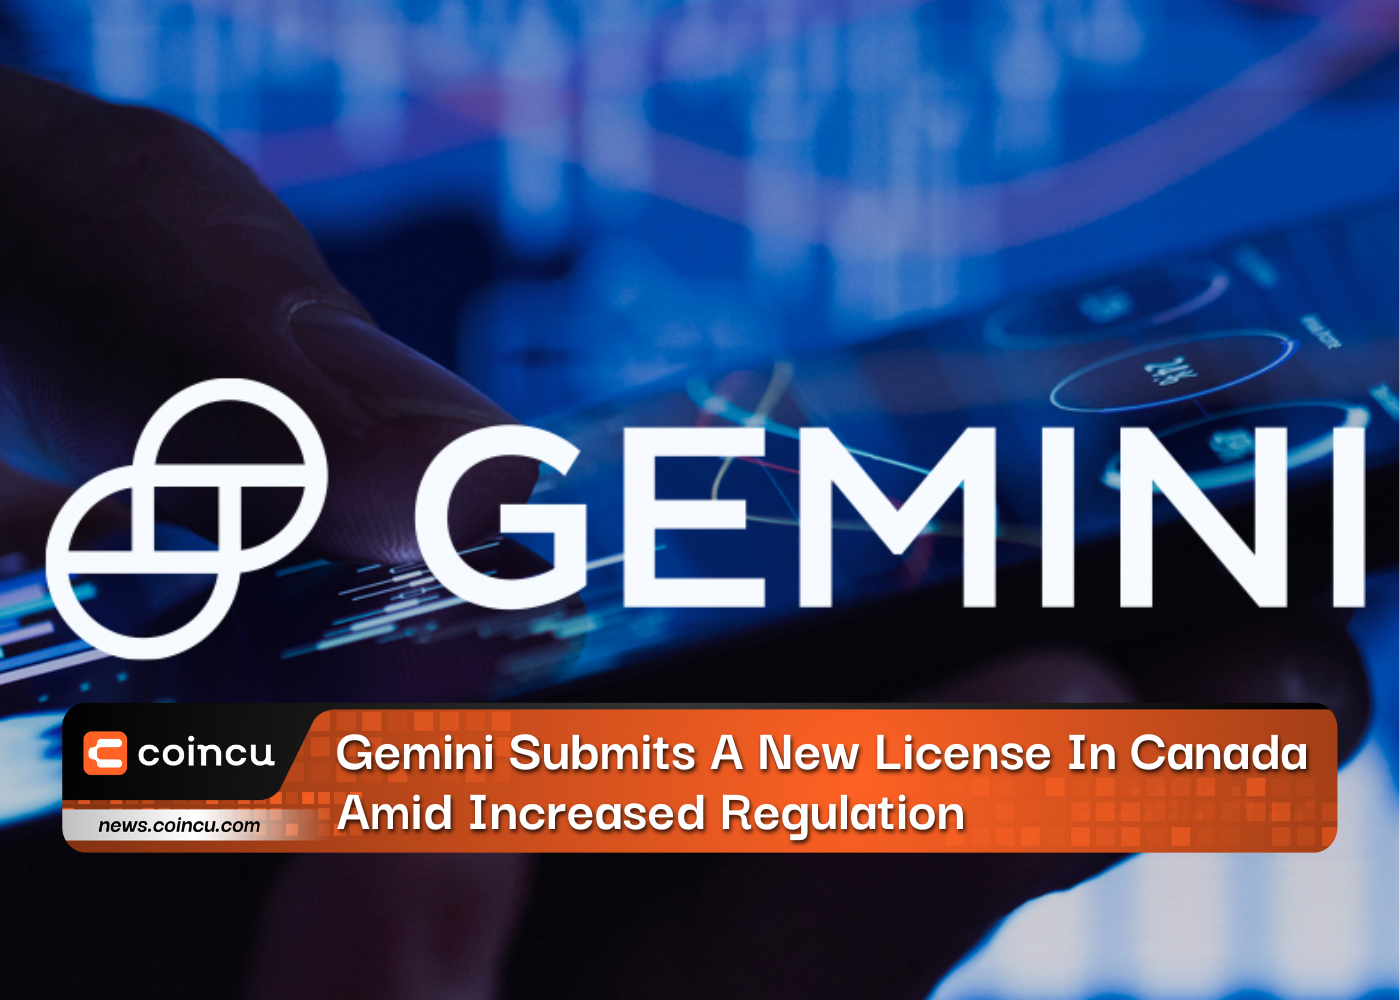 Gemini soumet une nouvelle licence au Canada dans un contexte de réglementation accrue